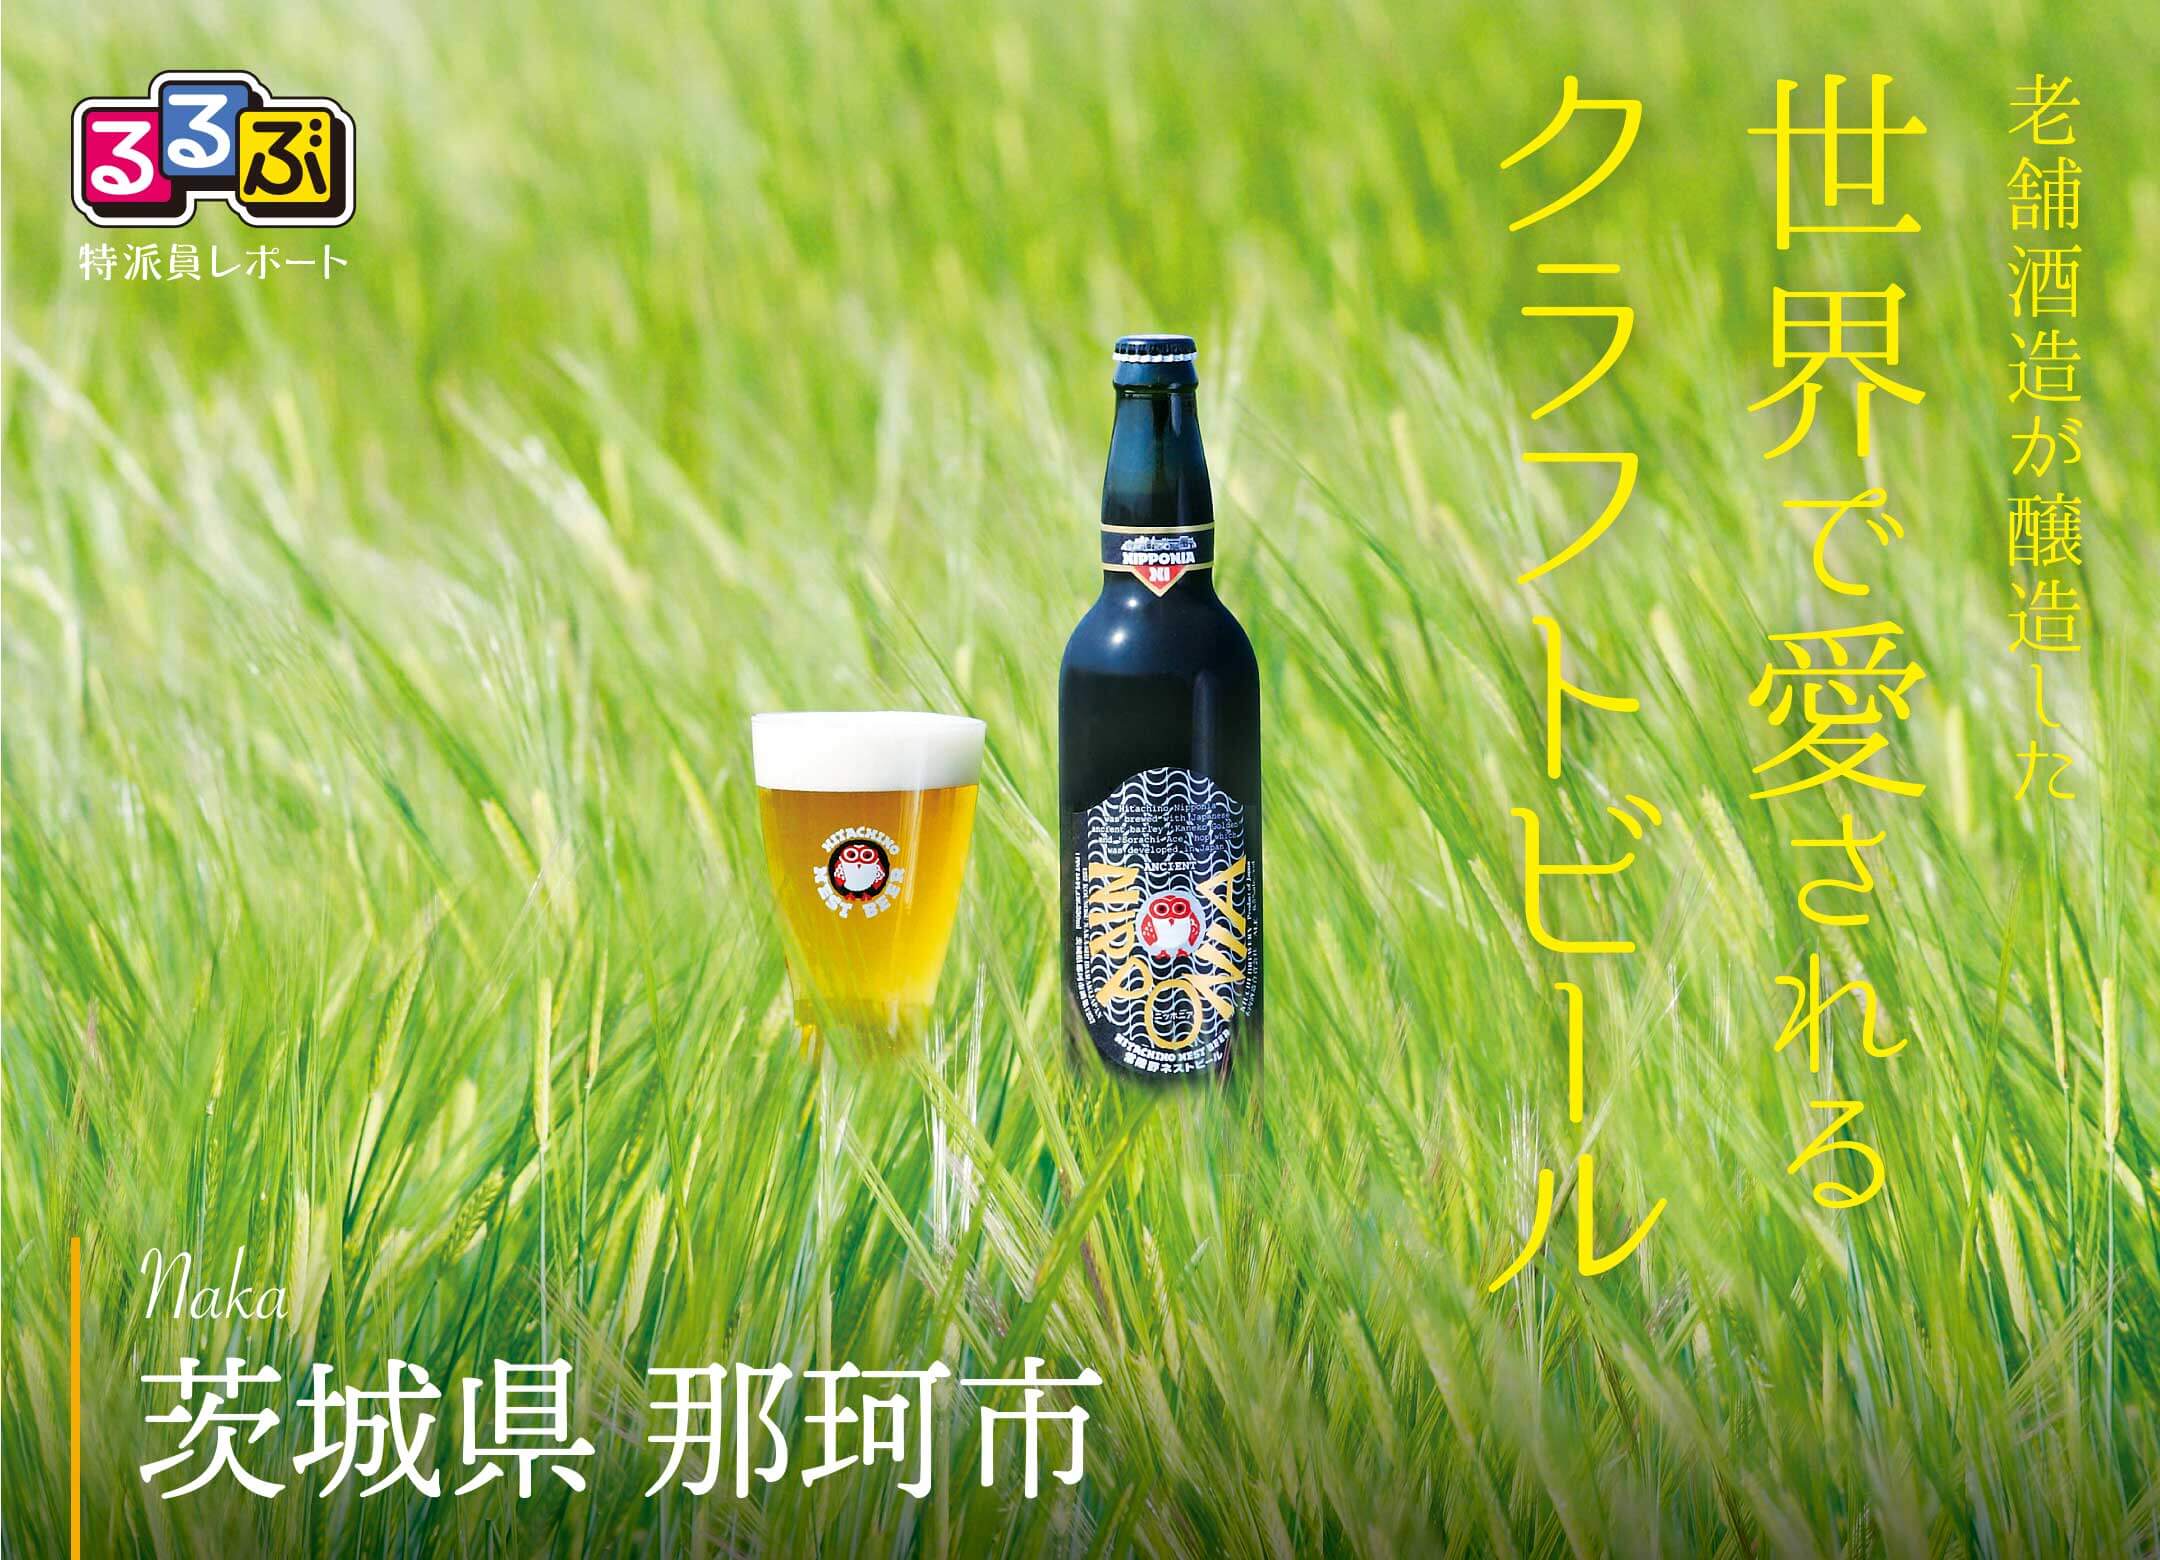 世界で愛されるクラフトビール | 茨城県那珂市 の旅行レポート